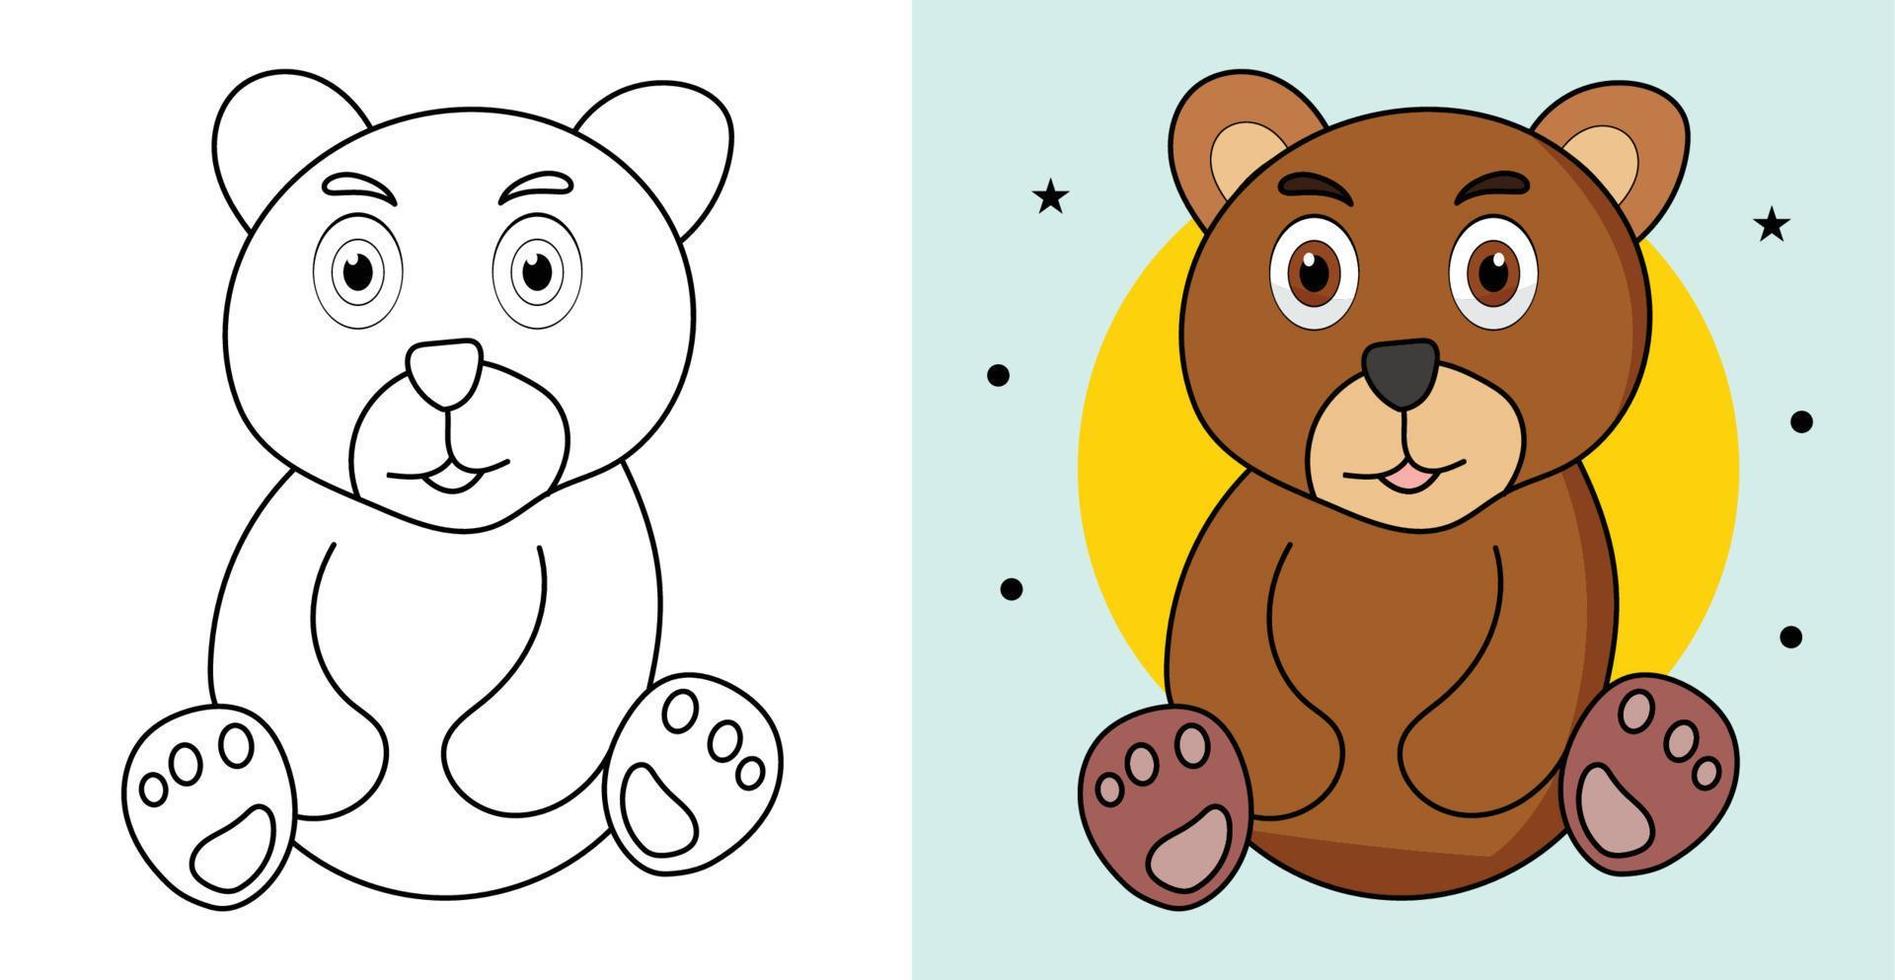 handgezeichnete umrisse brauner teddybär illustration zeichentrickfigur vektor farbseite für kinder